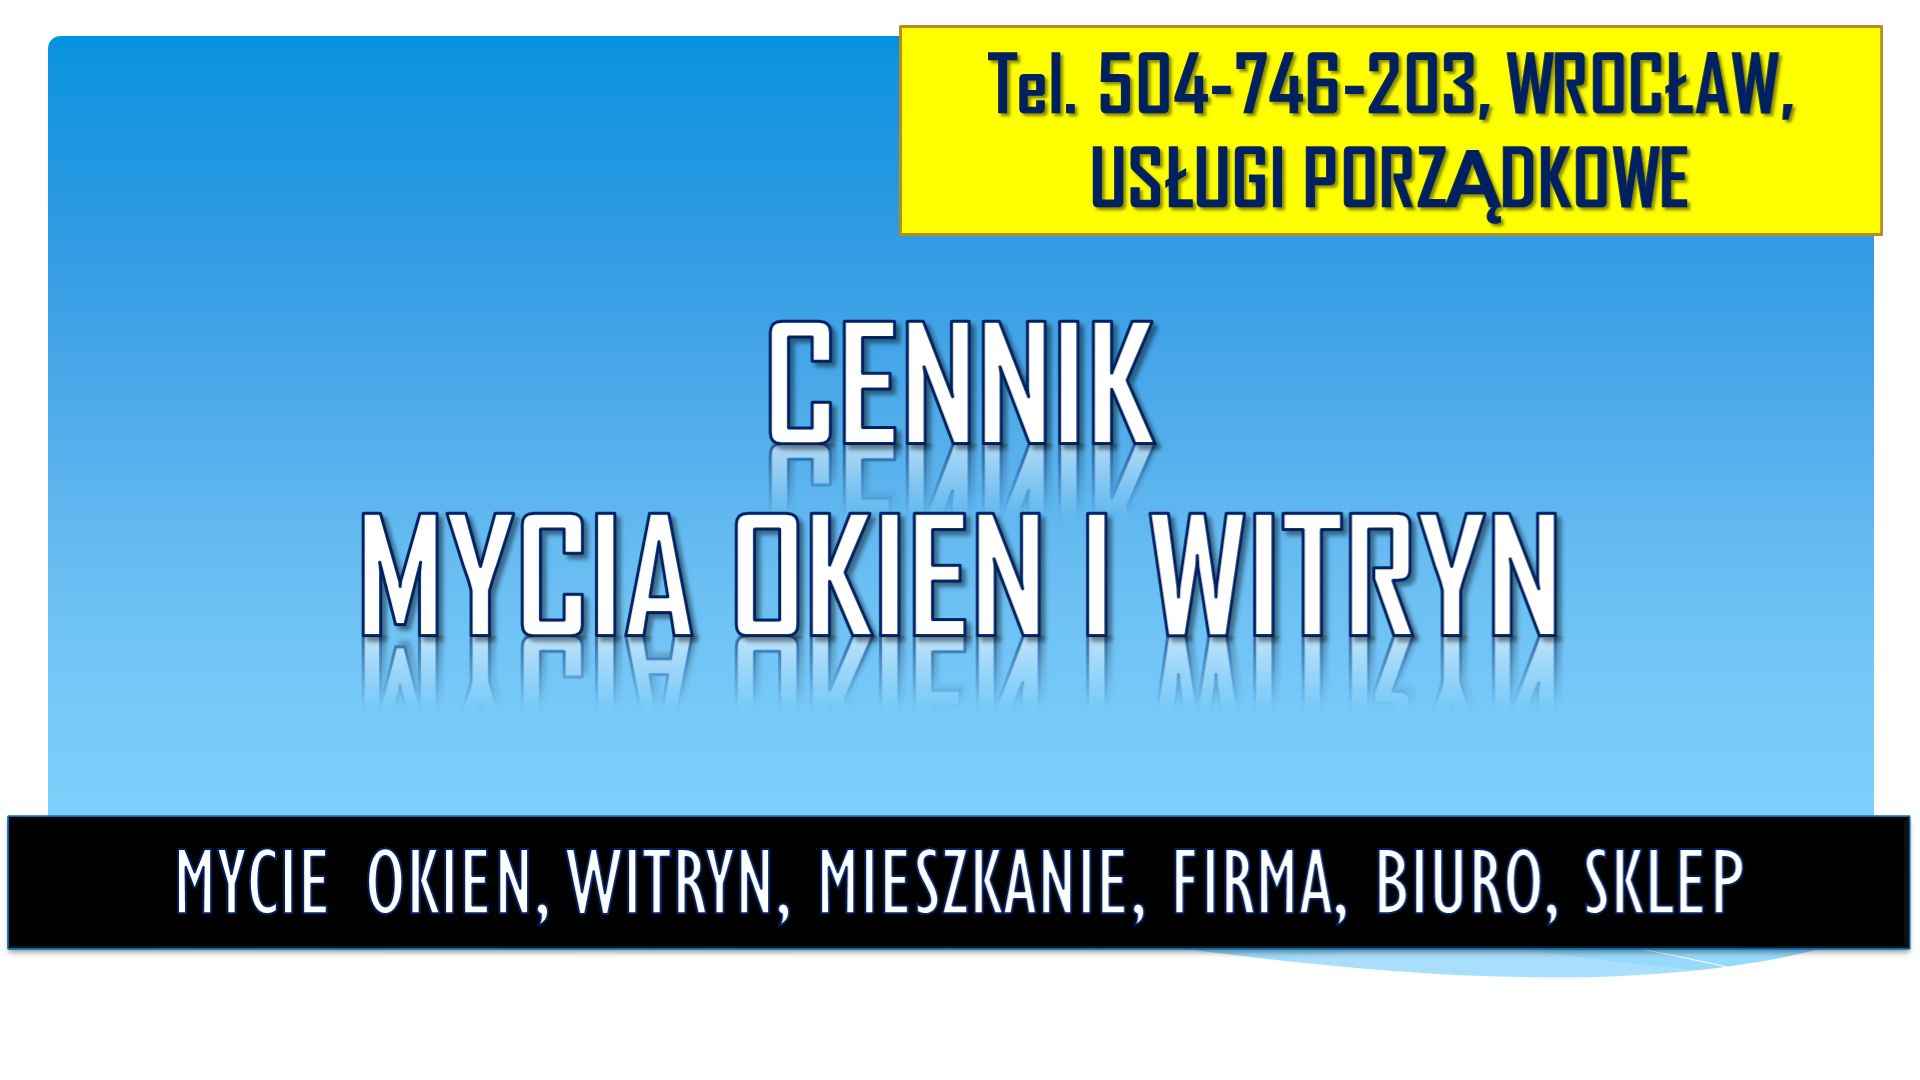 Cennik mycia okien, Wrocław, tel 504-746-203. Umycie witryny w sklepie Psie Pole - zdjęcie 2